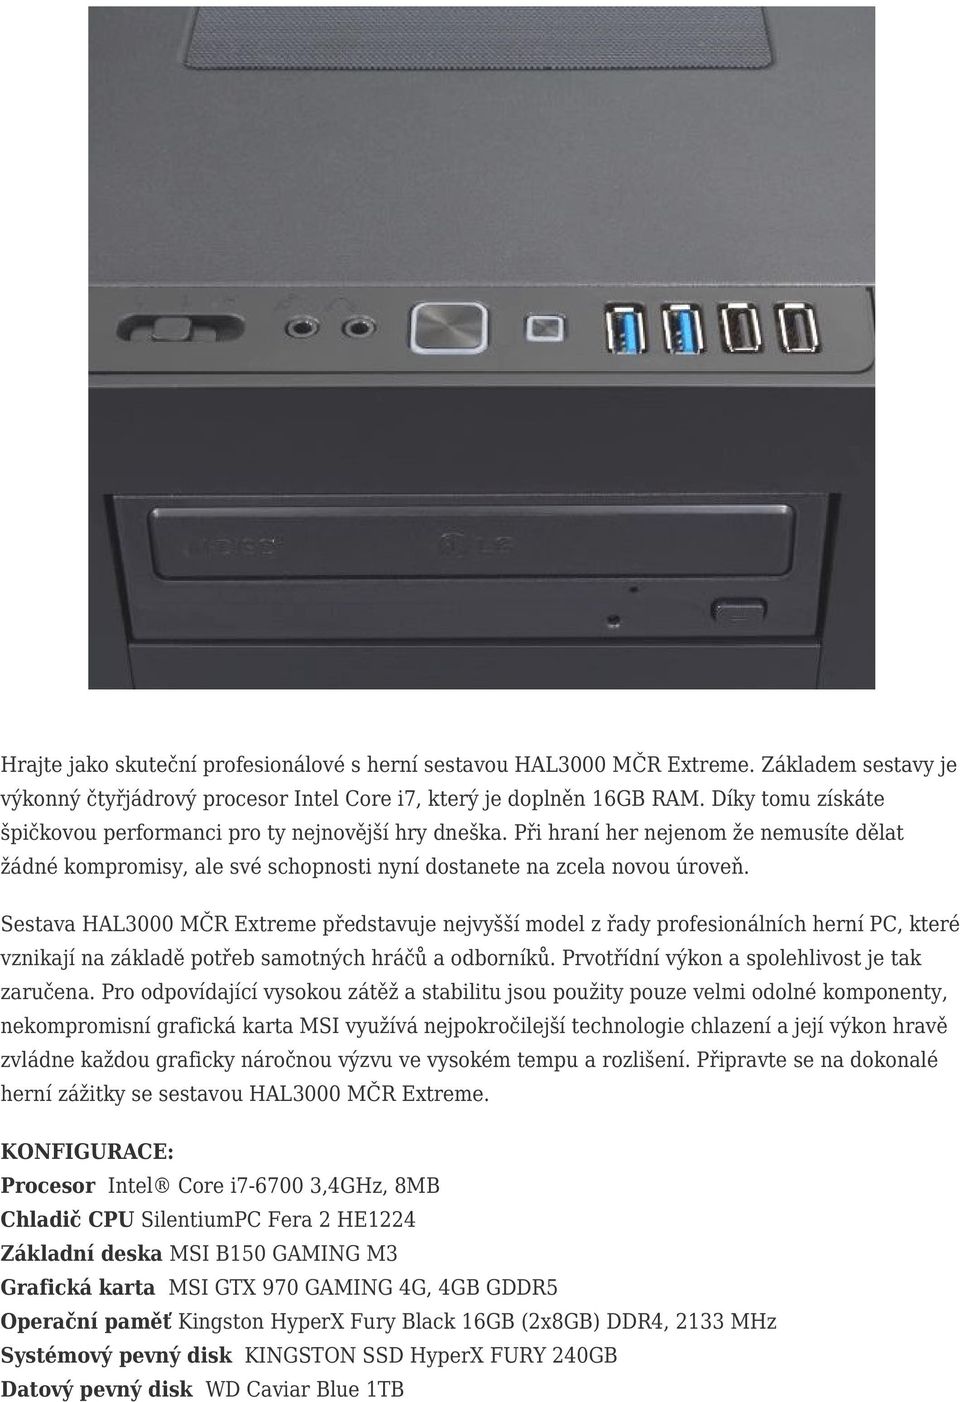 Sestava HAL3000 MČR Extreme představuje jvyšší model z řady profesionálních herní PC, které vznikají na základě potřeb samotných hráčů a odborníků. Prvotřídní výkon a spolehlivost je tak zaručena.